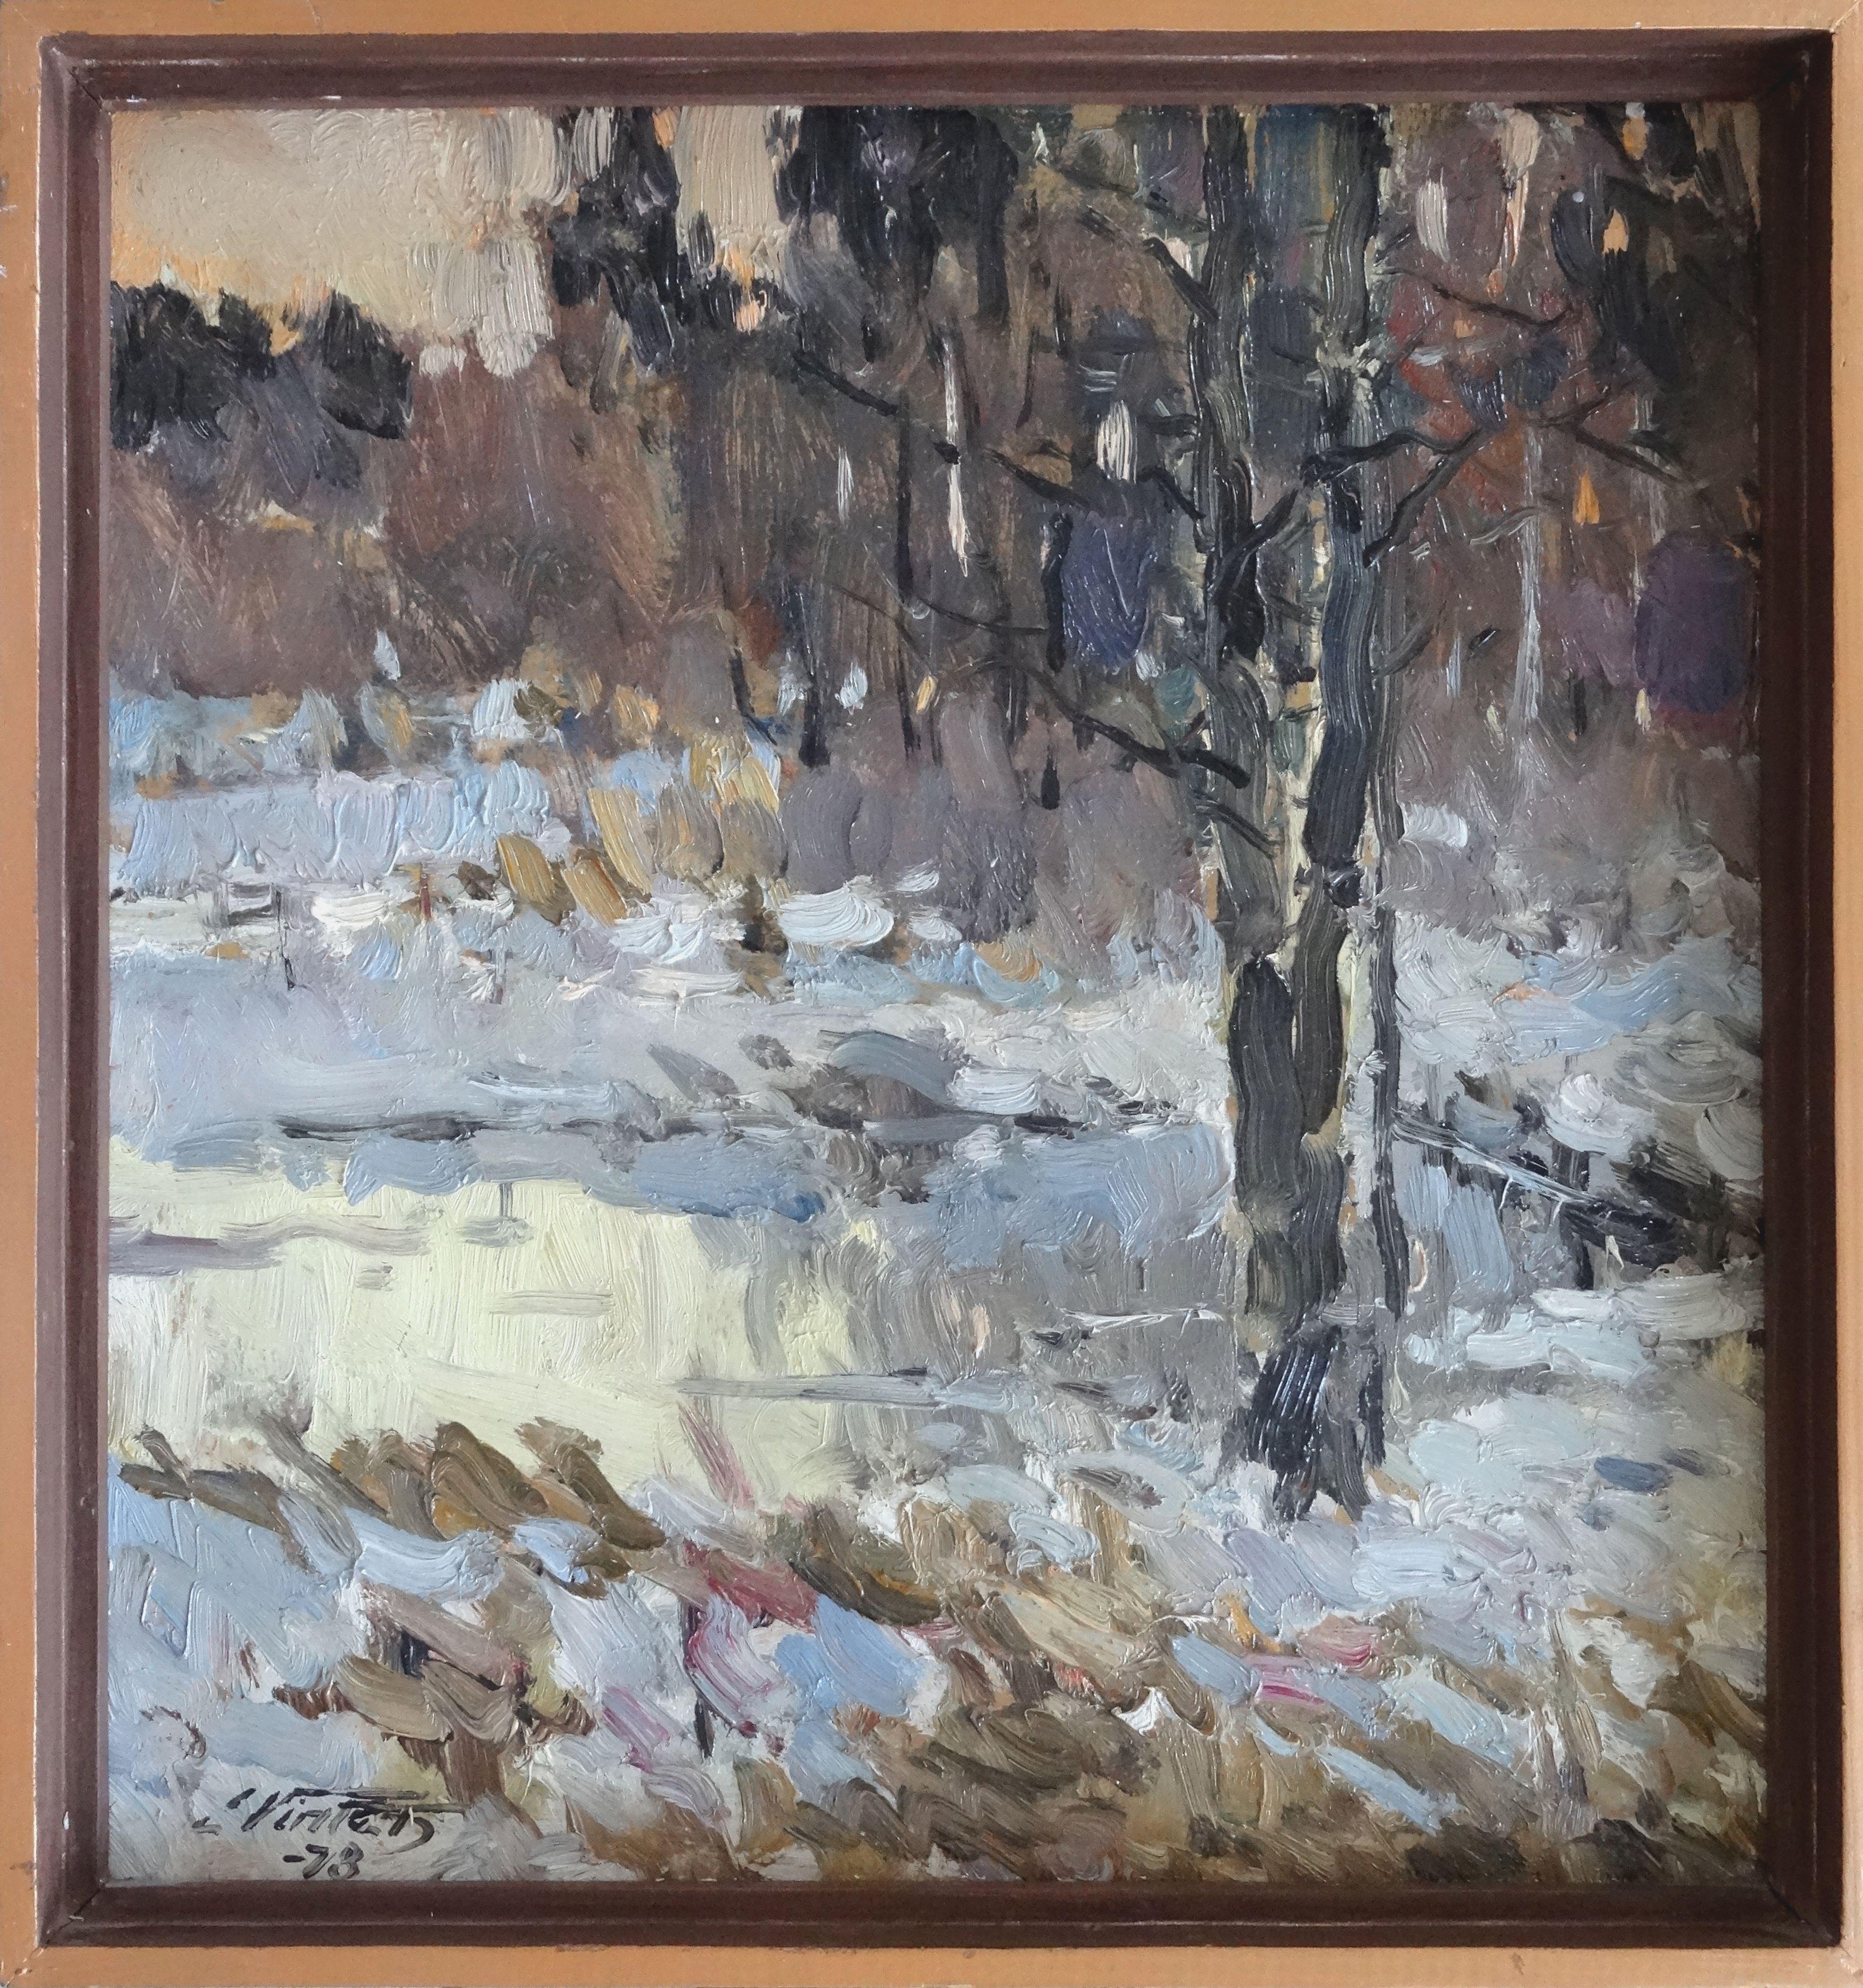 Winter. 1978, oil on cardboard, 48x45 cm - Painting by Edgars Vinters